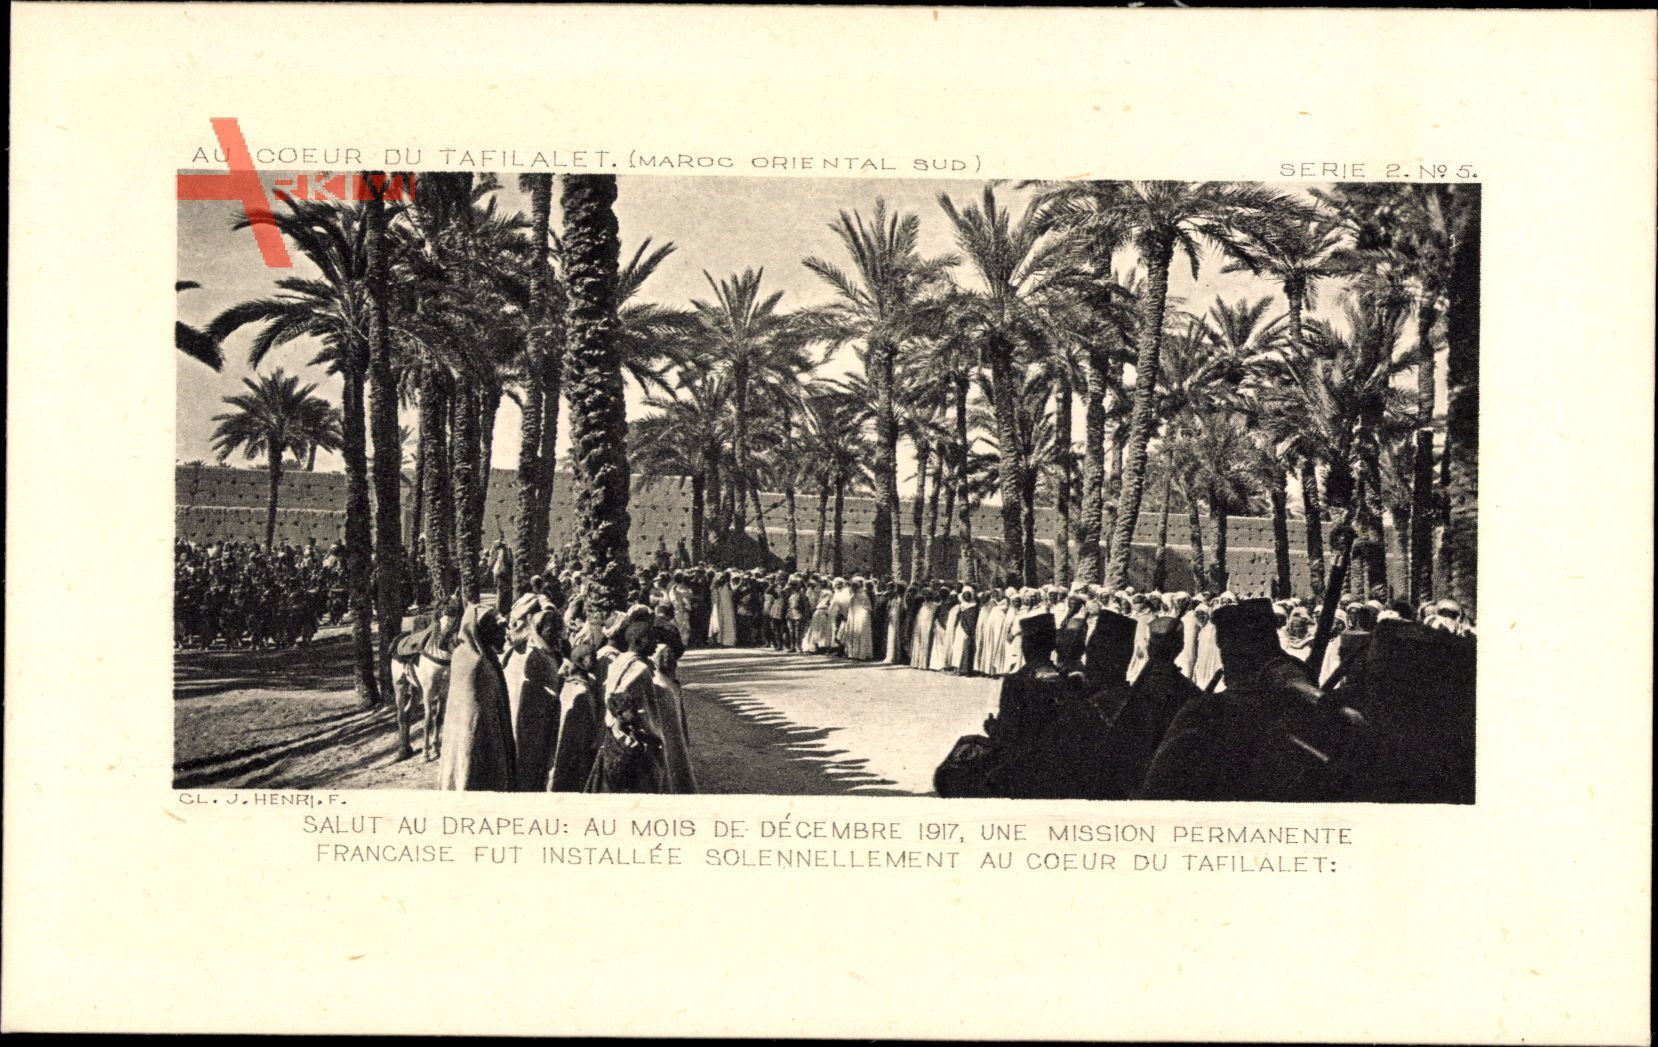 Tafilalet Marokko, Salut au Drapeau, au Mois de Decembre 1917